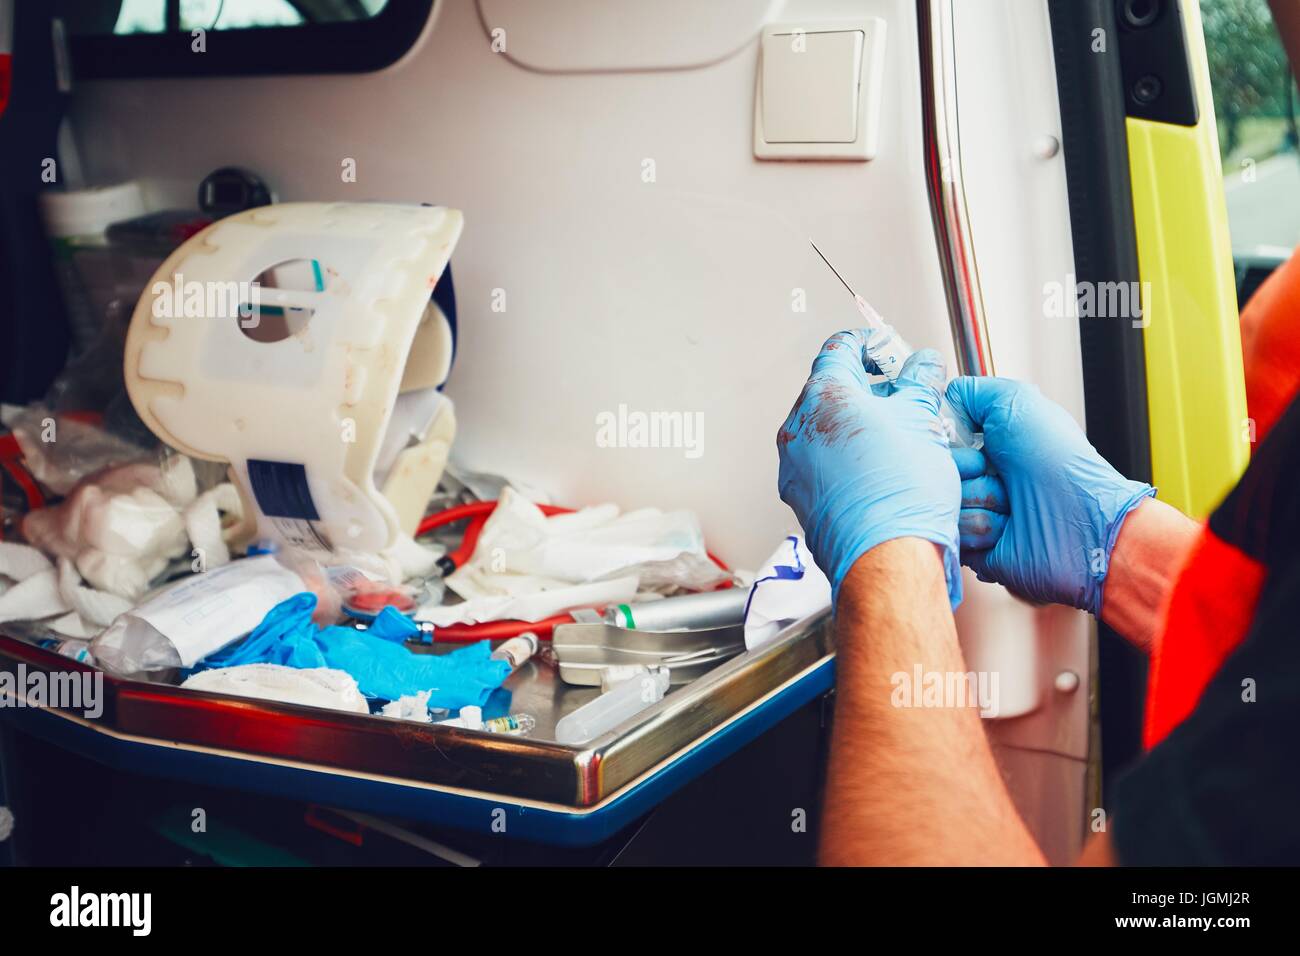 Paramedic nella porta dell'ambulanza prepara i medicinali per un paziente ferito (dettaglio delle mani). Tema del salvataggio, aiuto e speranza. Foto Stock